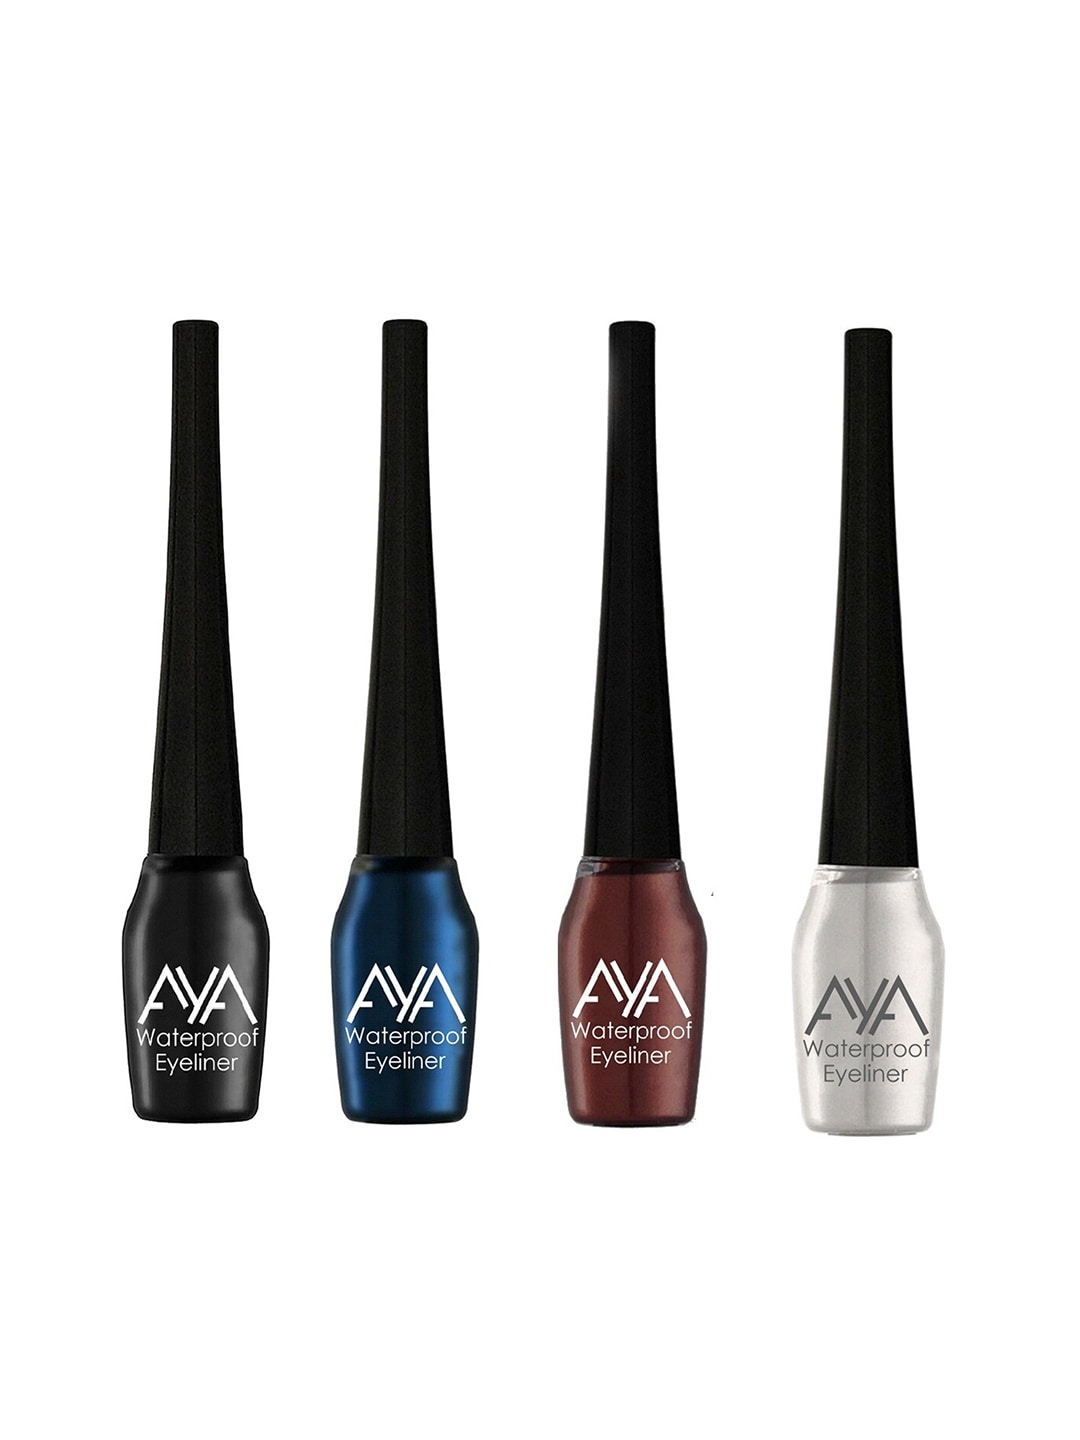 AYA Set of 4 Waterproof Liquid Eyeliner - Black, Blue, Brown, Silver Price in India